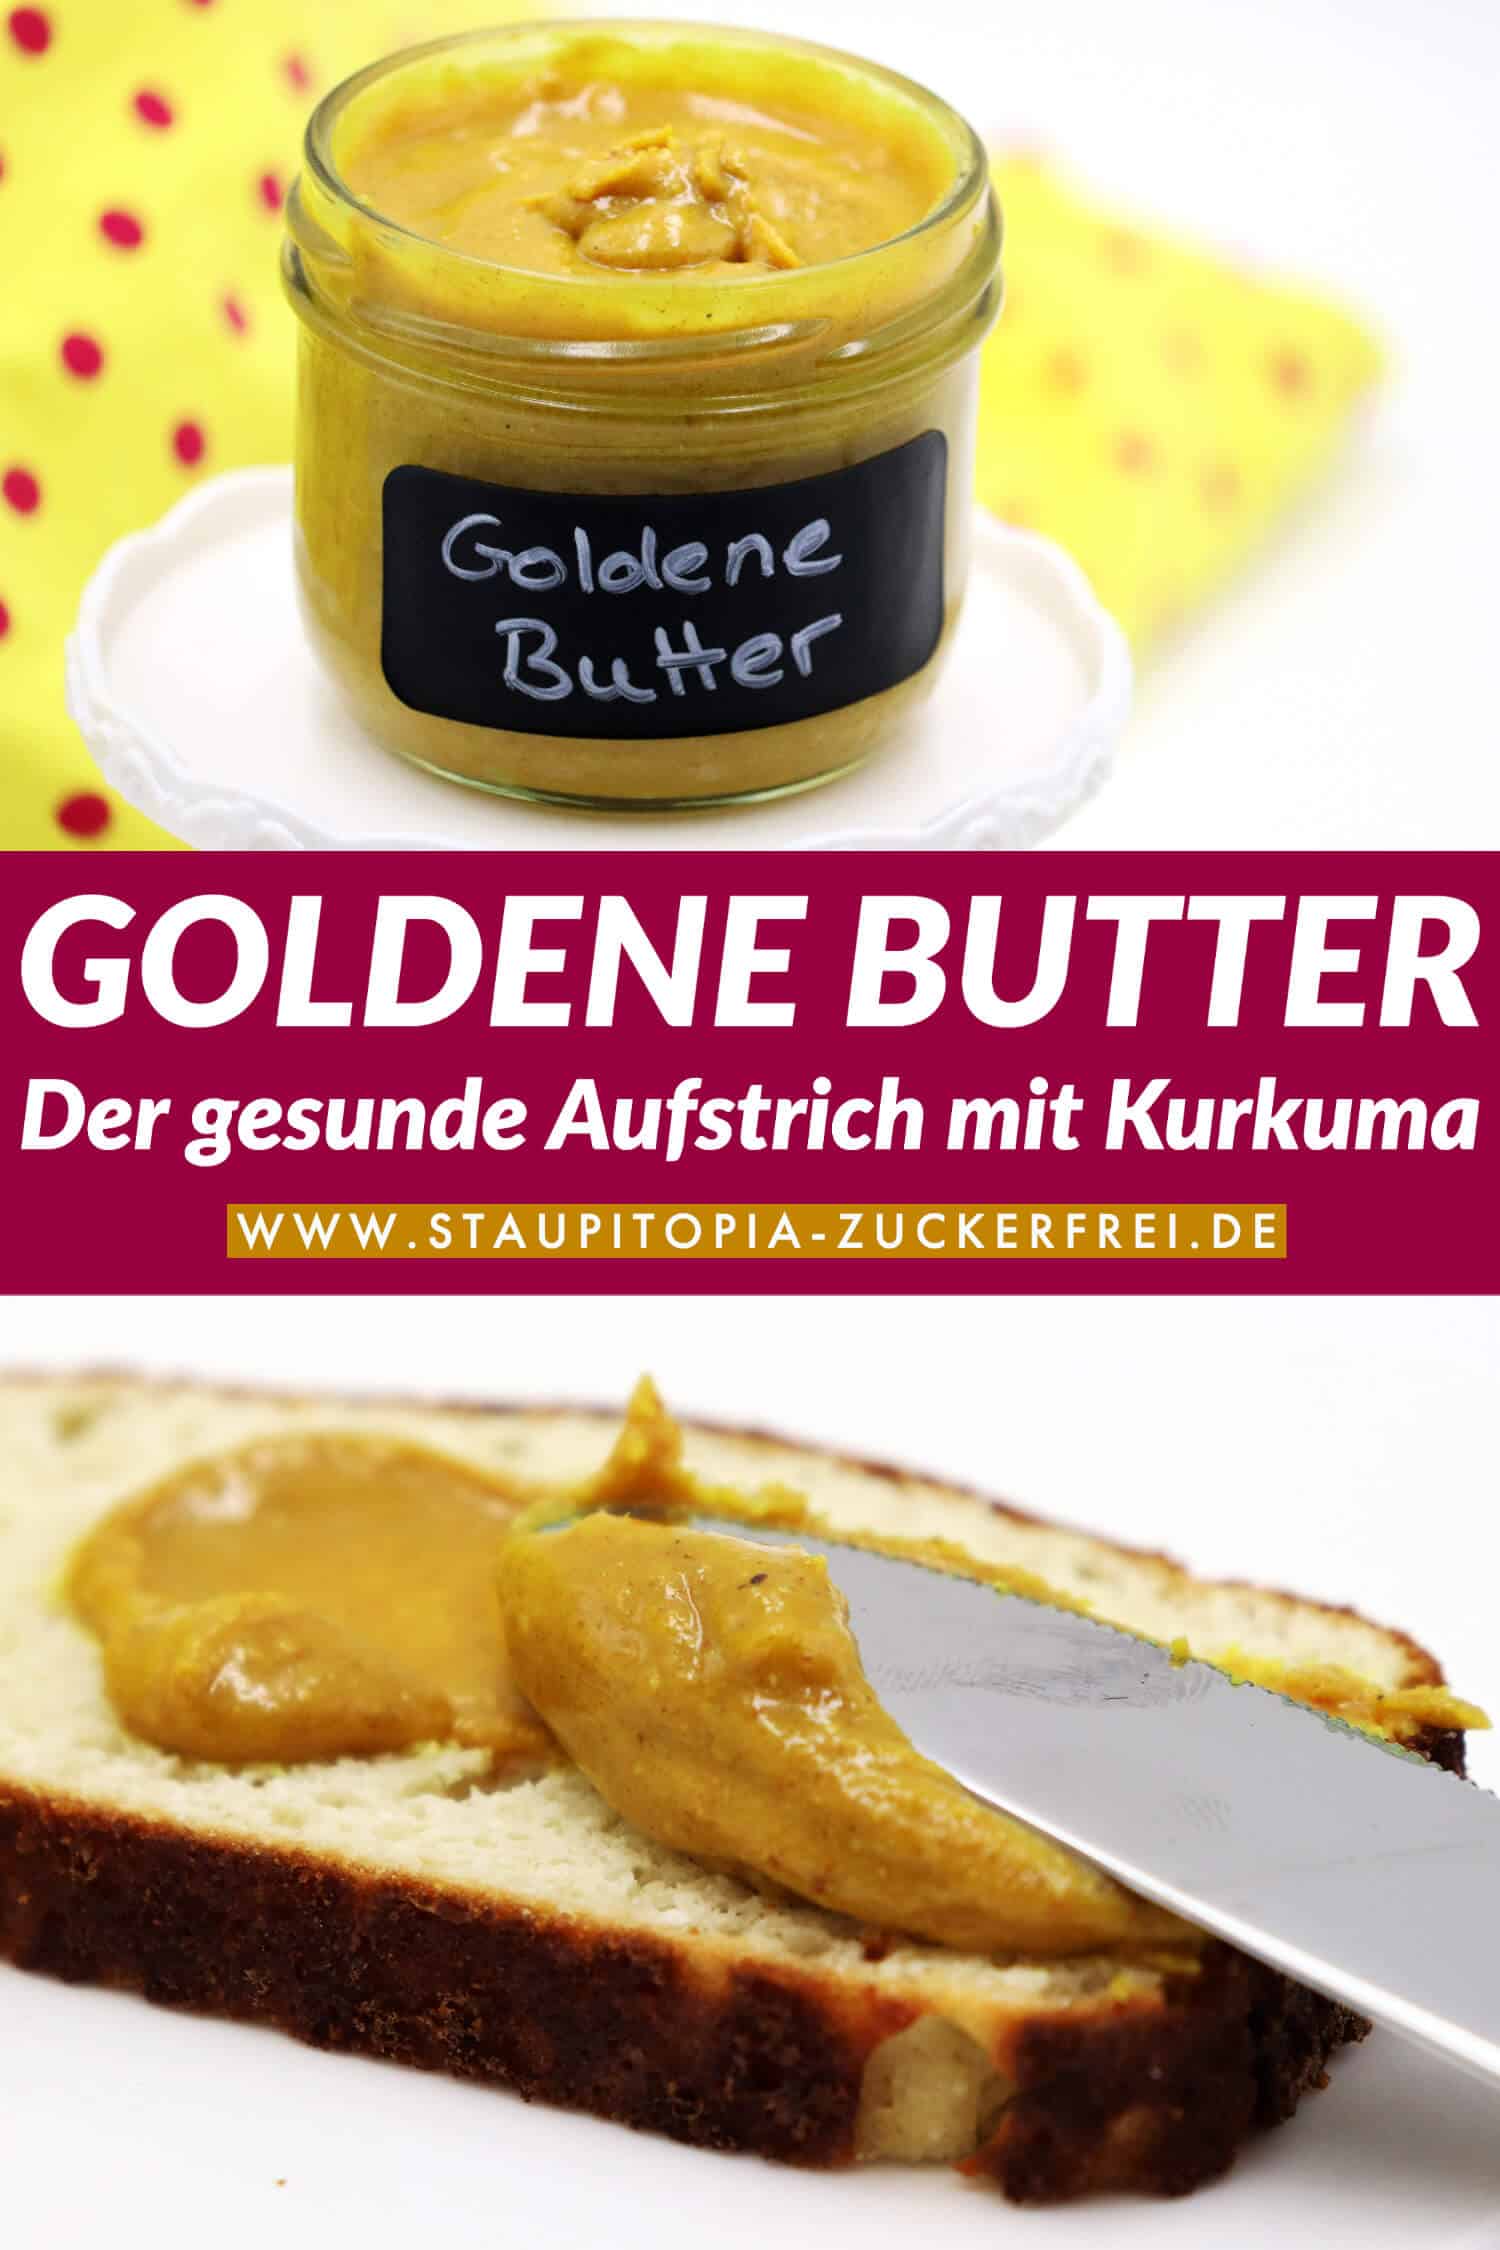 Goldene Butter - Ein gesunder Brotaufstrich als Pendant zur goldenen Milch: Die wundervollen Zutaten der goldenen Milch lassen sich wunderbar in einen köstlichen, zuckerfreien Brotaufstrich aus Mandeln und Kurkuma verwandeln. Ein Rezept für ein Frühstück ohne Zucker, dass du unbedingt ausprobieren musst!